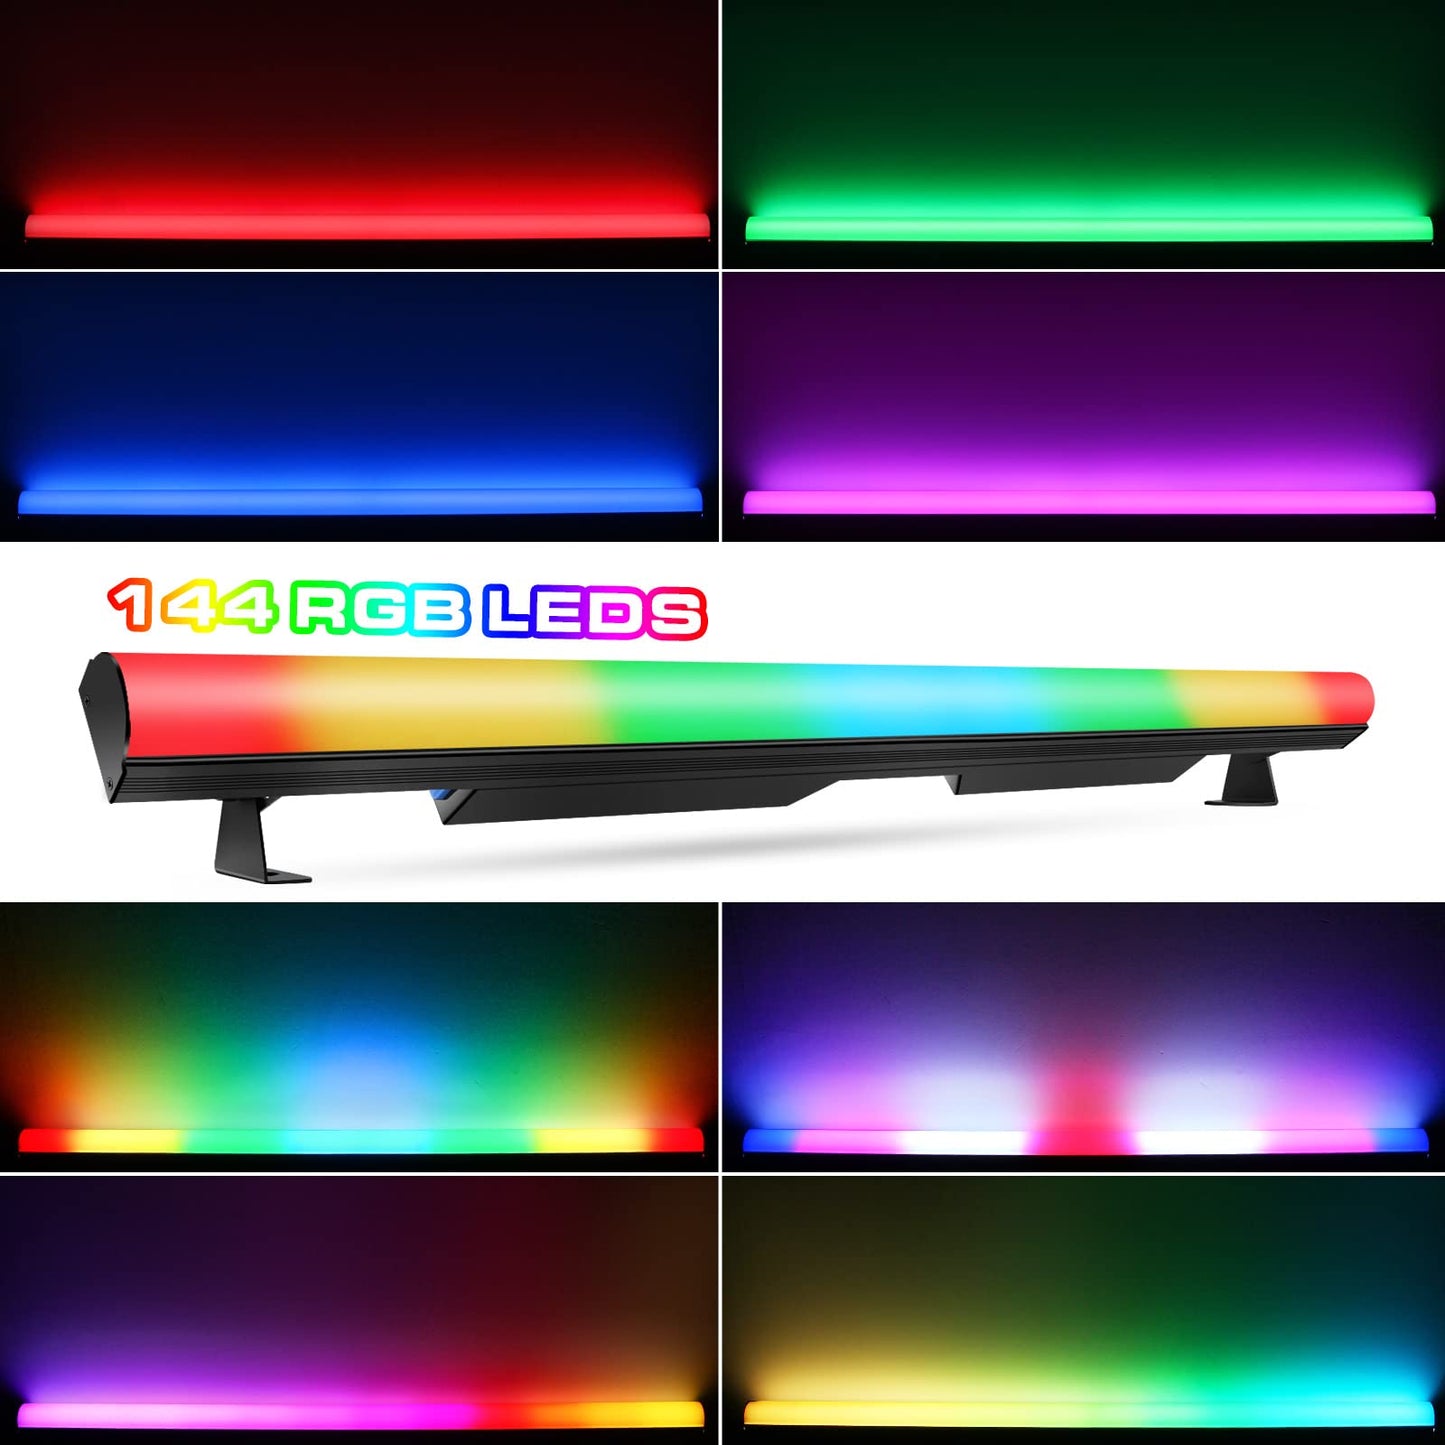 6-Pack, OPPSK 144pcs RGB 3in1 SMD 5050 LED Pixel Light Bar with Len